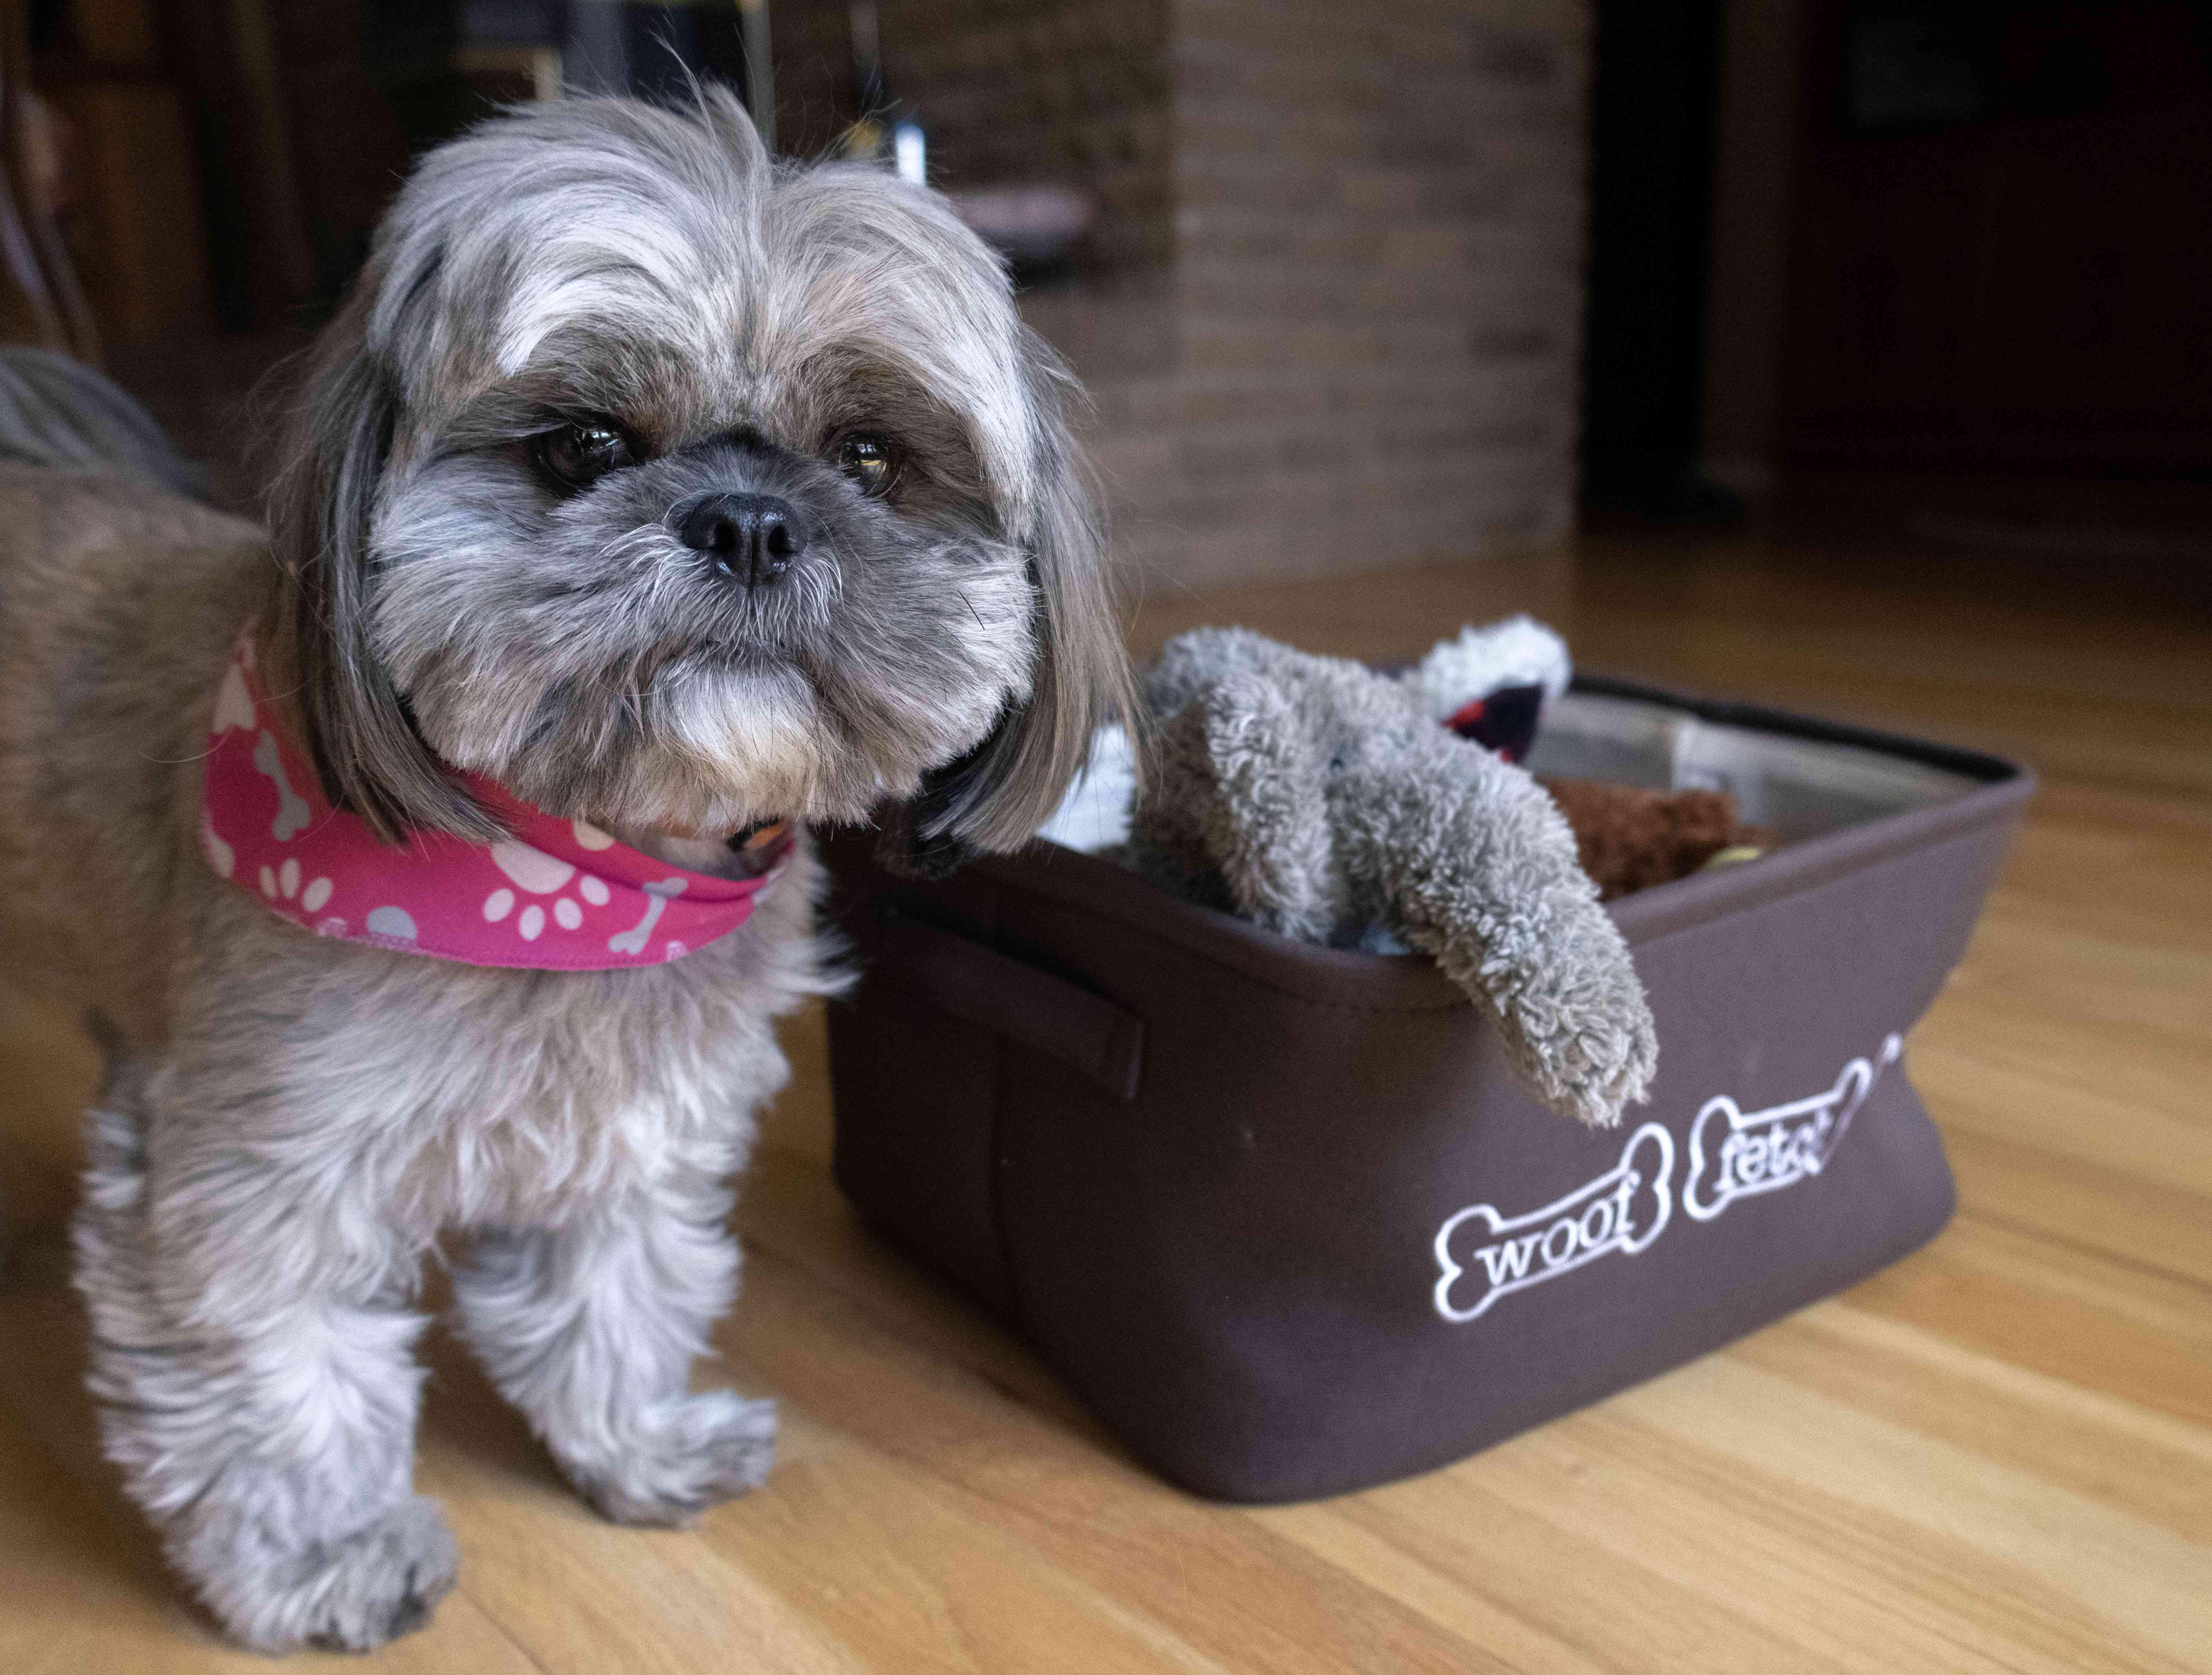 灰色和白色Shih Tzu-mix小狗站在狗玩具的布料桶旁边